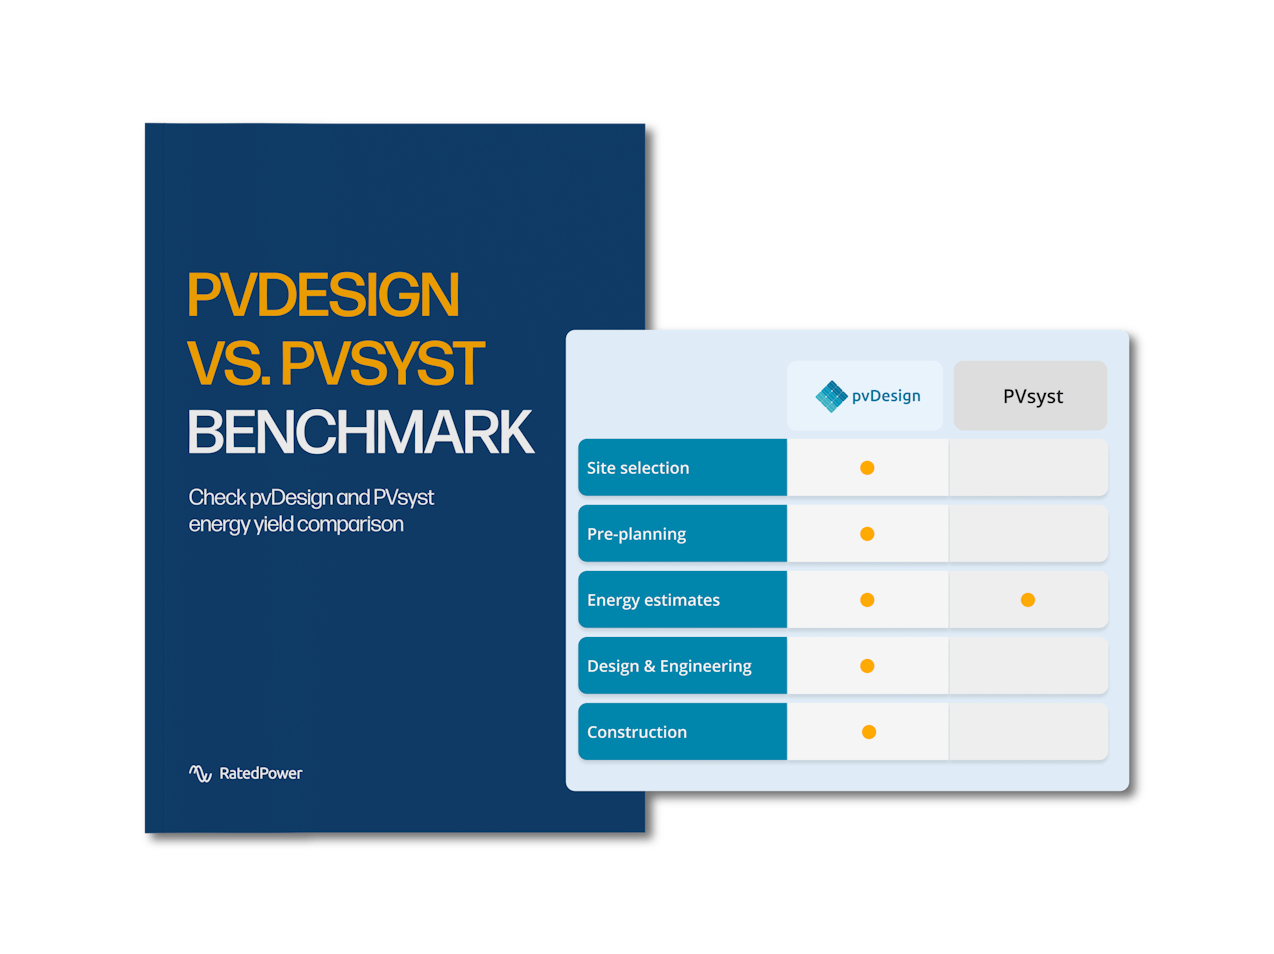 pvDesign vs PVsyst benchmark